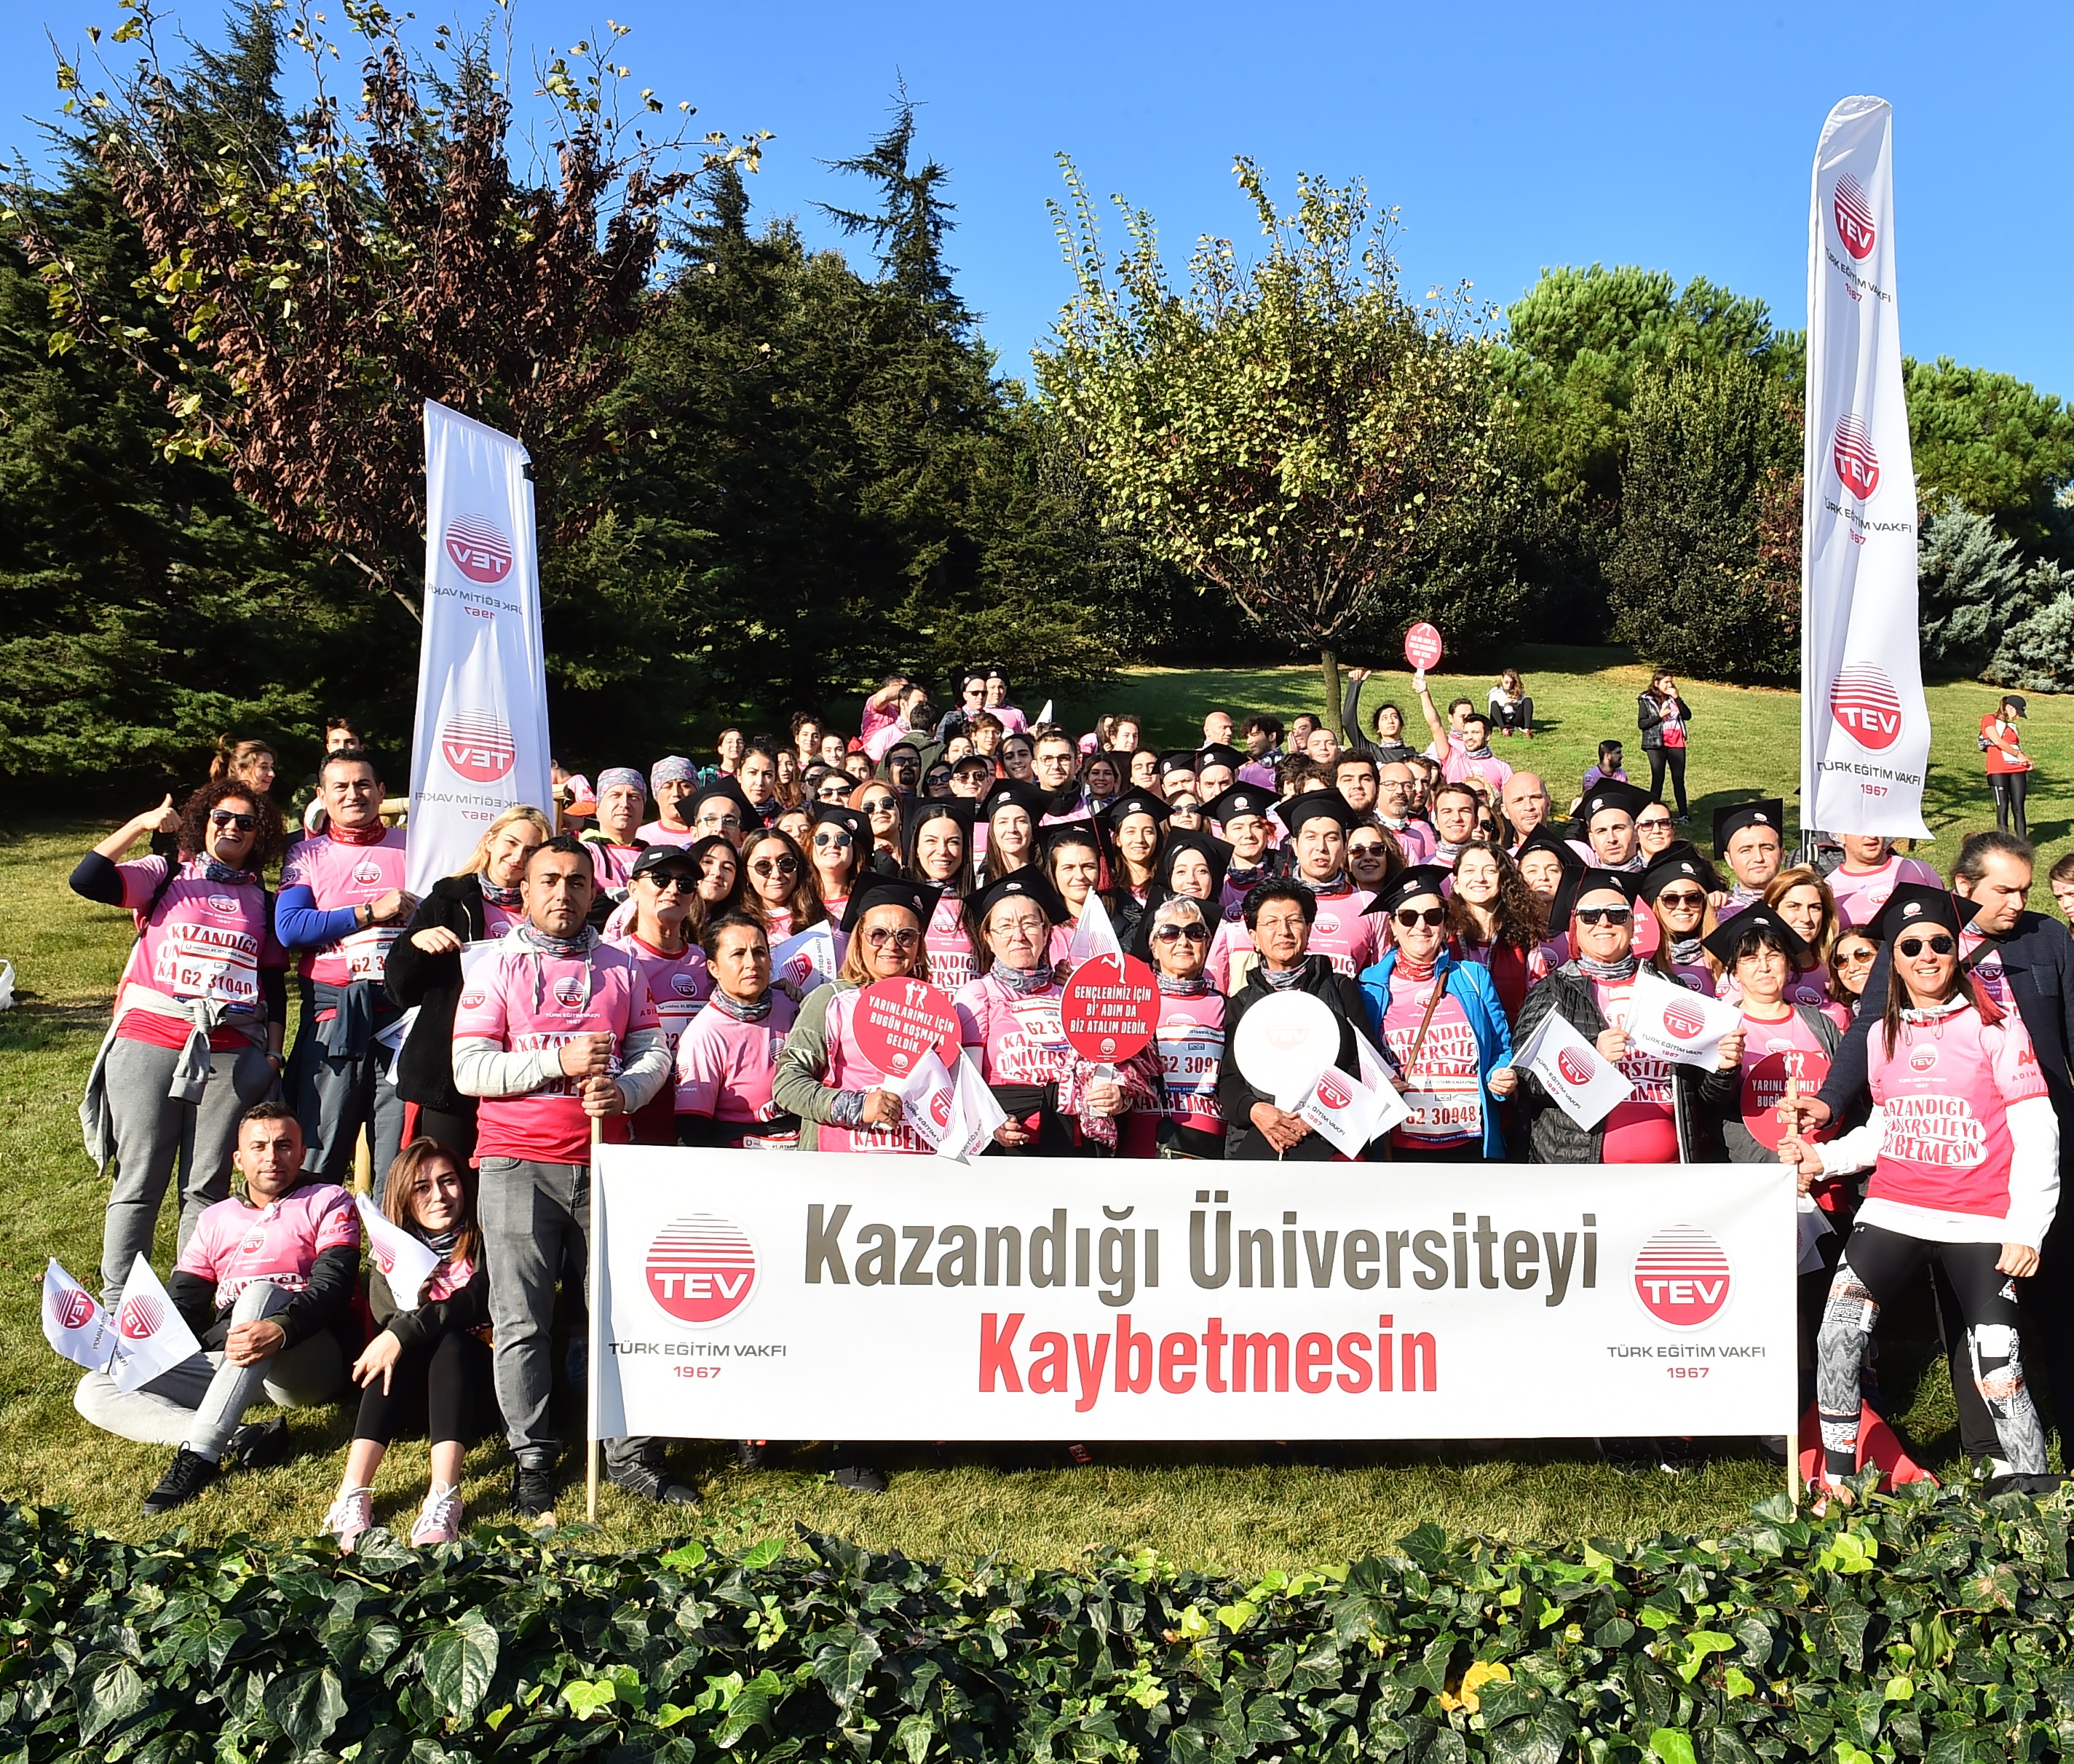 Türk Eğitim Vakfı Gönüllüleri, Gençler “Kazandığı Üniversiteyi Kaybetmesin” Diye Kepleriyle Koştu!